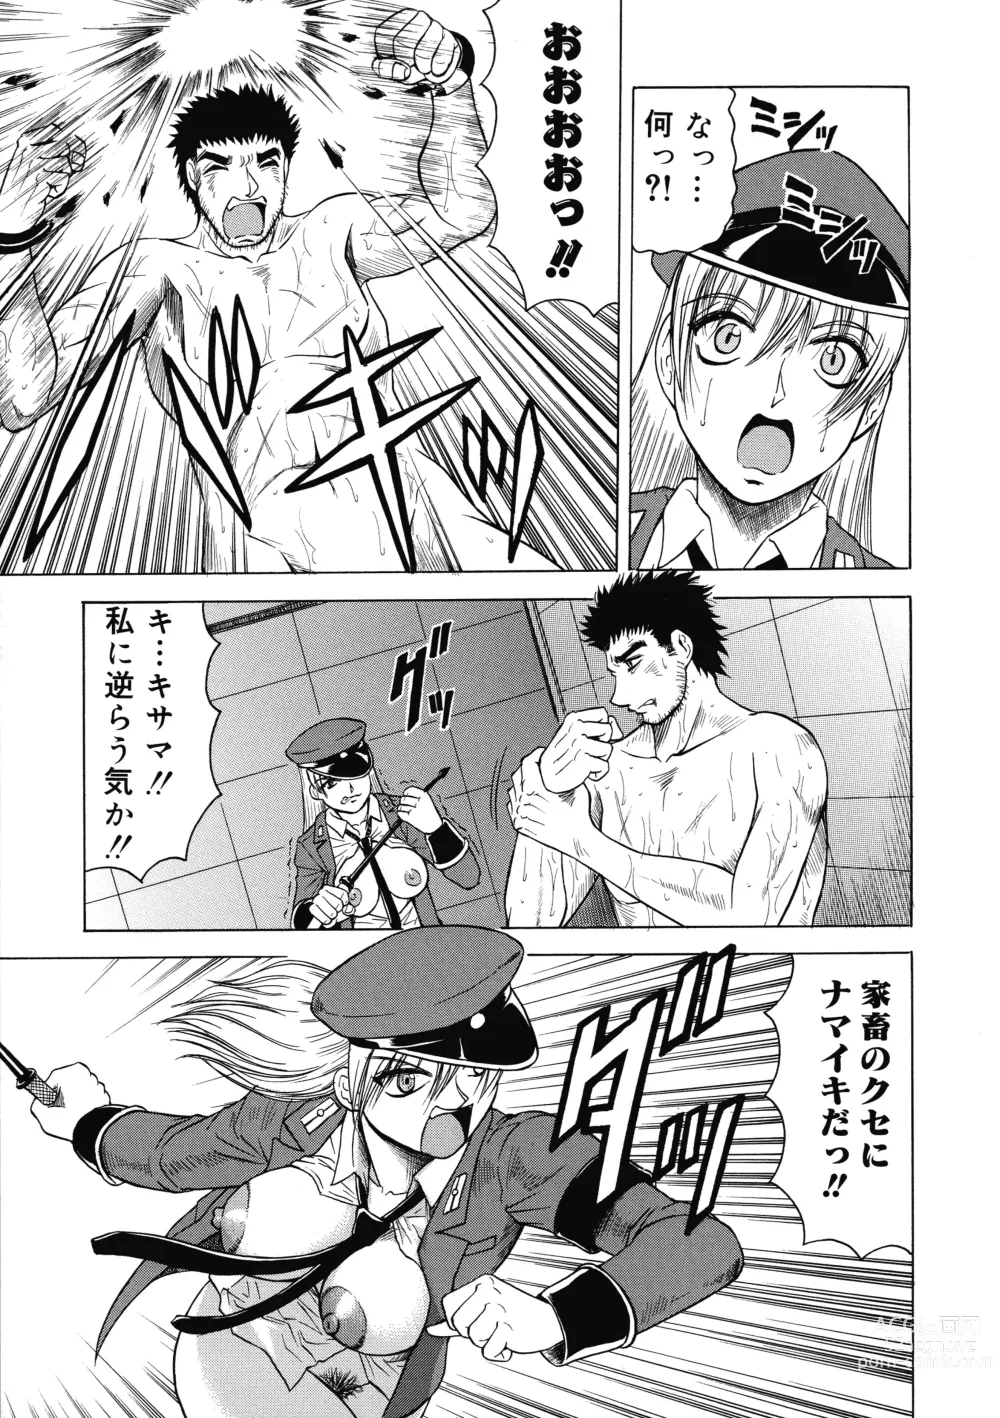 Page 155 of manga Ichigeki Nousatsu Satsuki-sensei